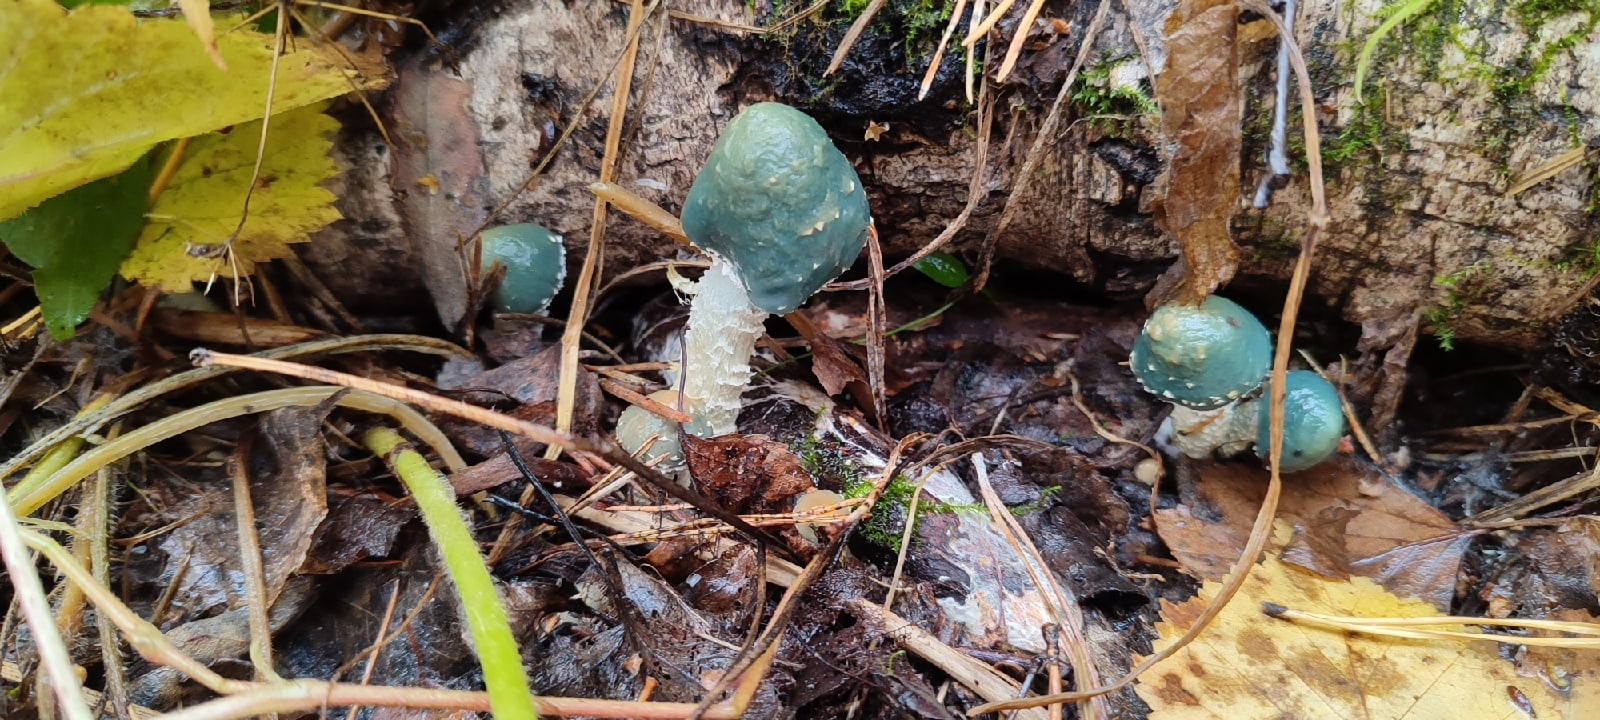 А это строфария сине-зеленая, тоже съедобный гриб